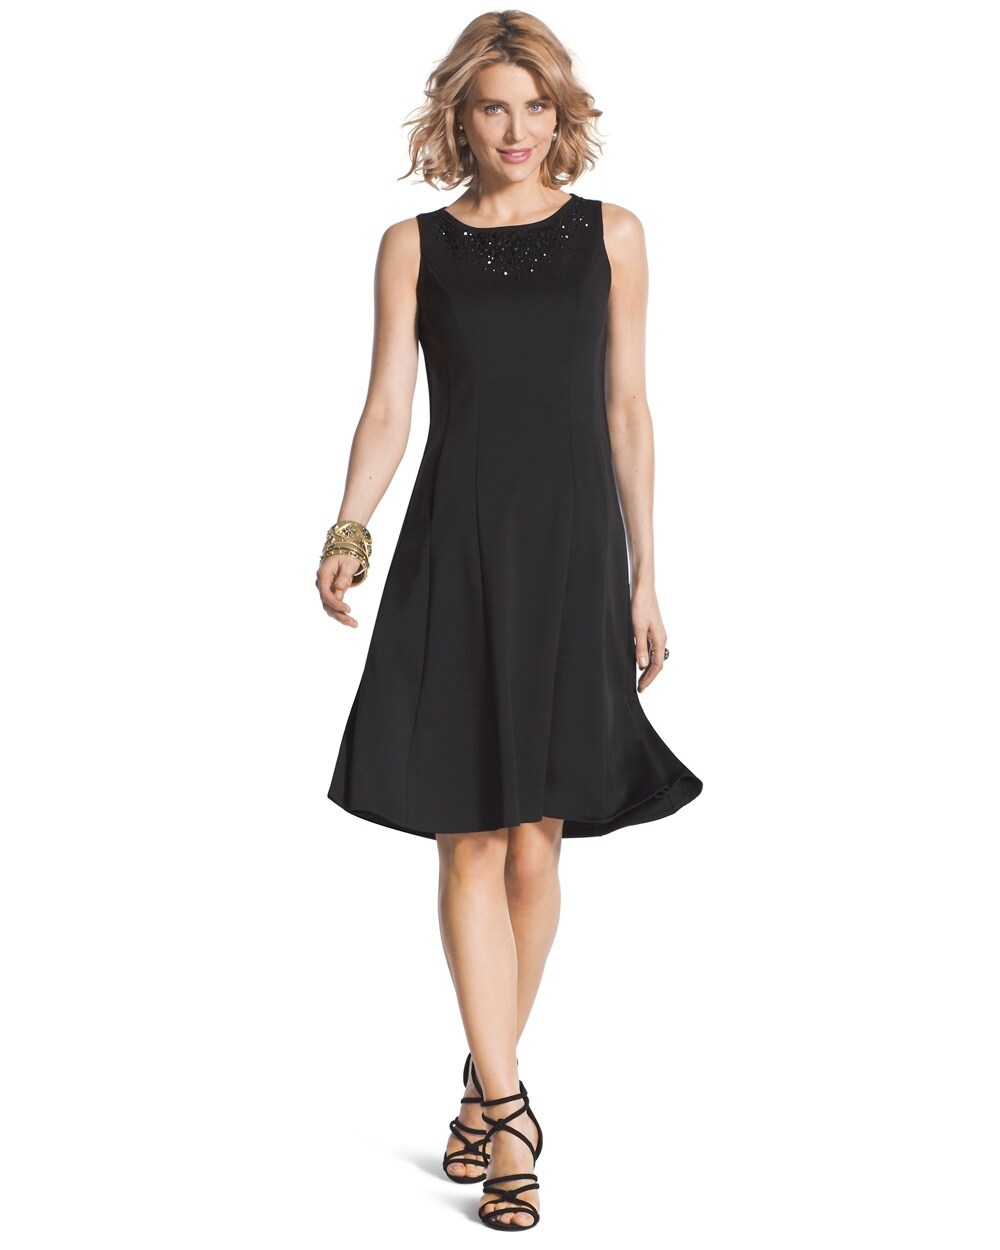 Embellished Sleeveless Black Dress